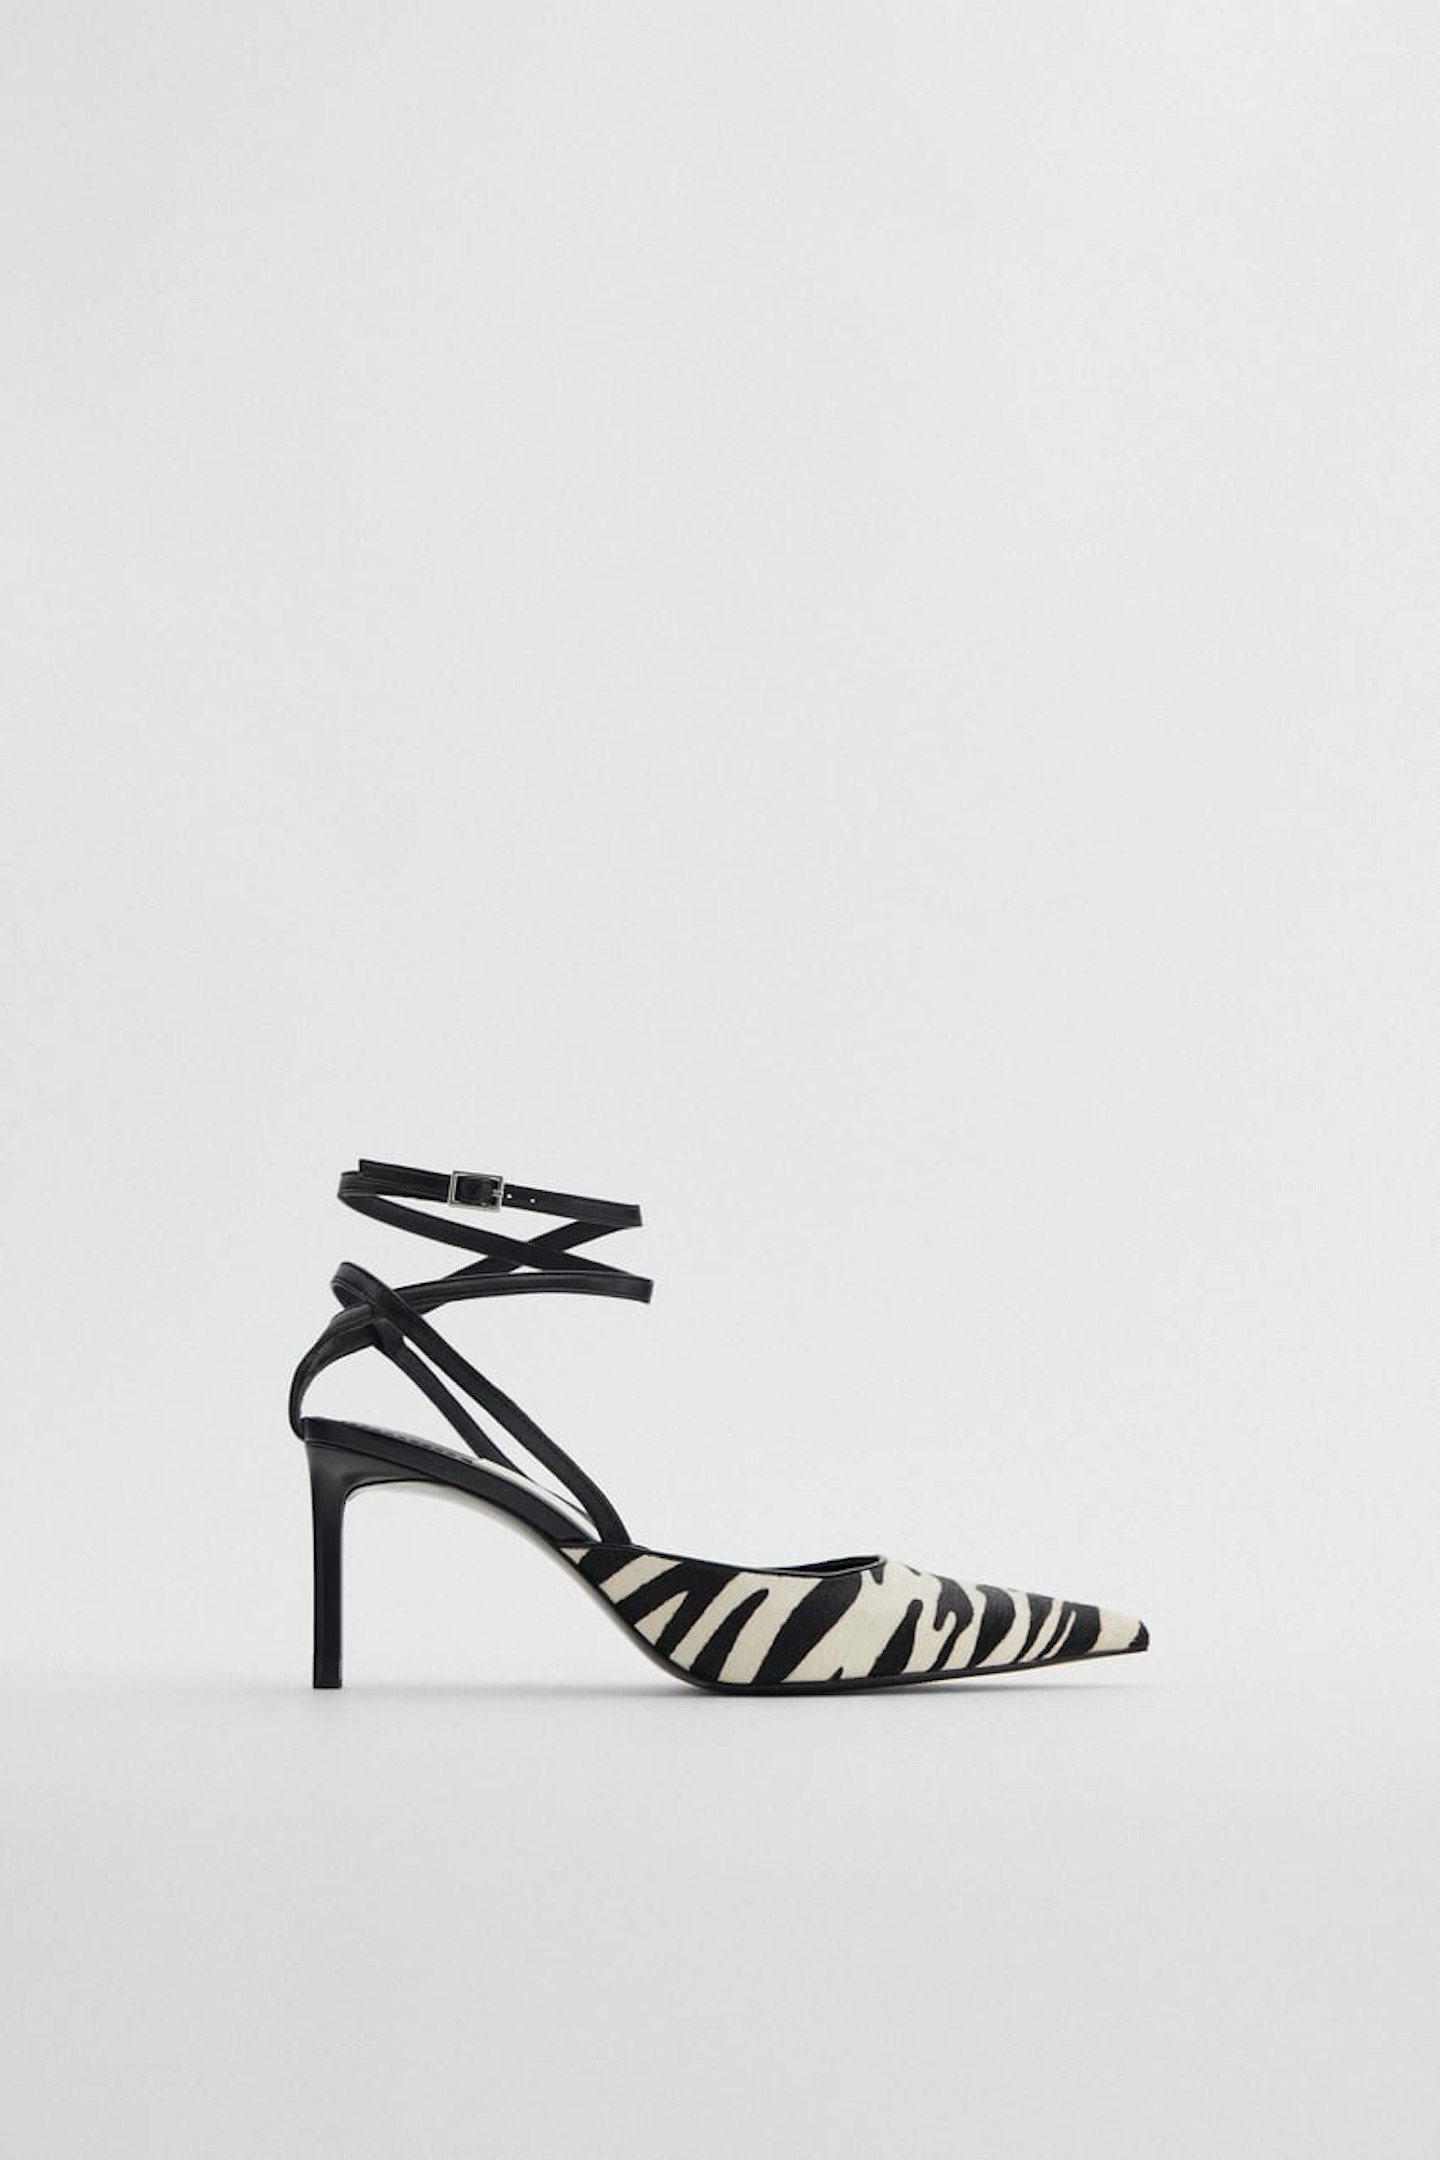 Zara, Zebra Print Shoes, £49.99